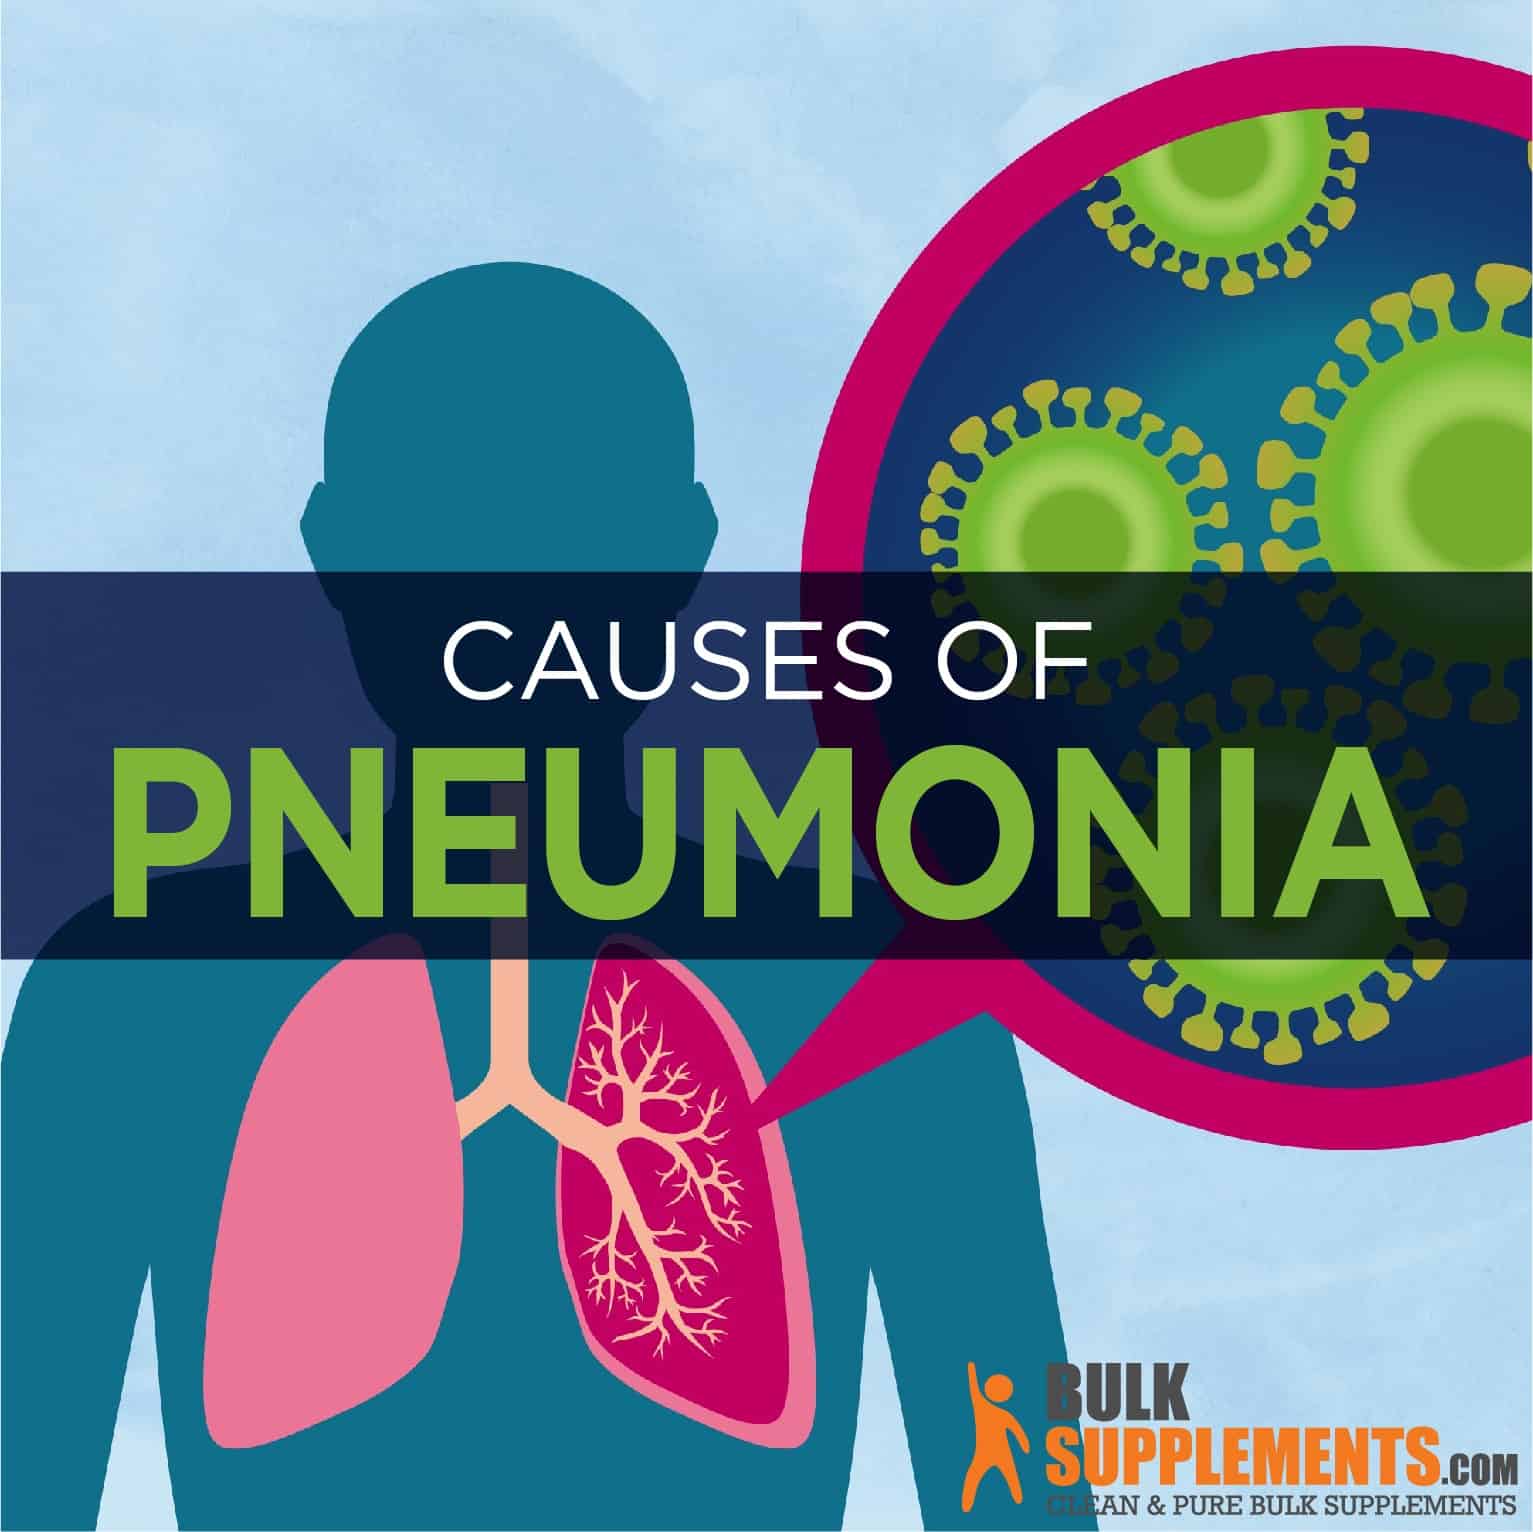 Pneumonia: Symptoms, Causes & Treatment by James Denlinger